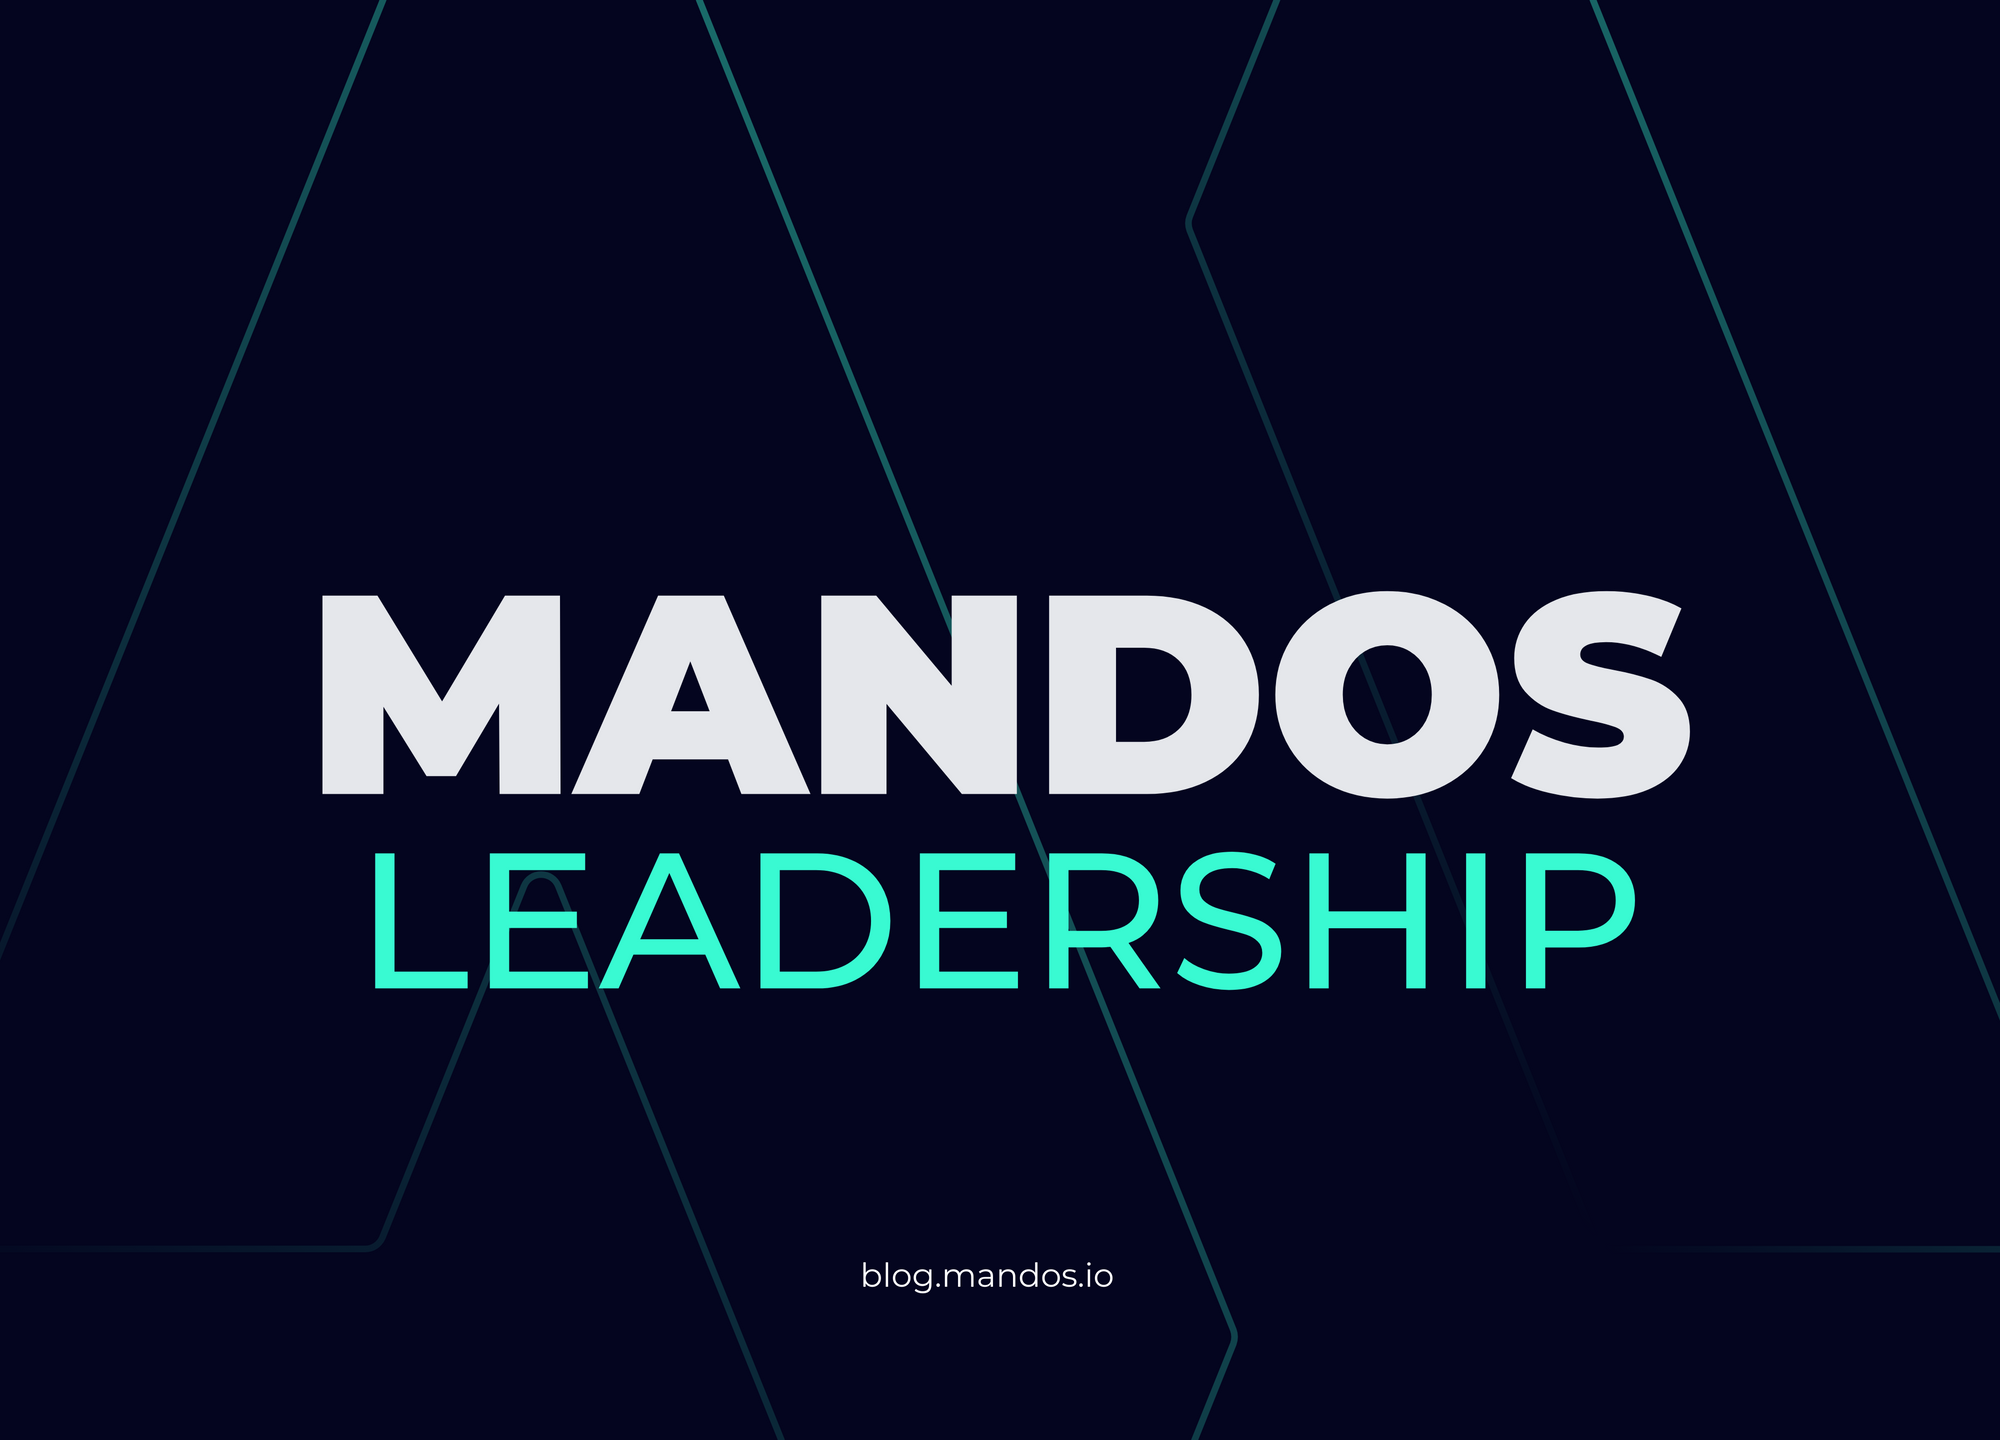 Leadership on mandos